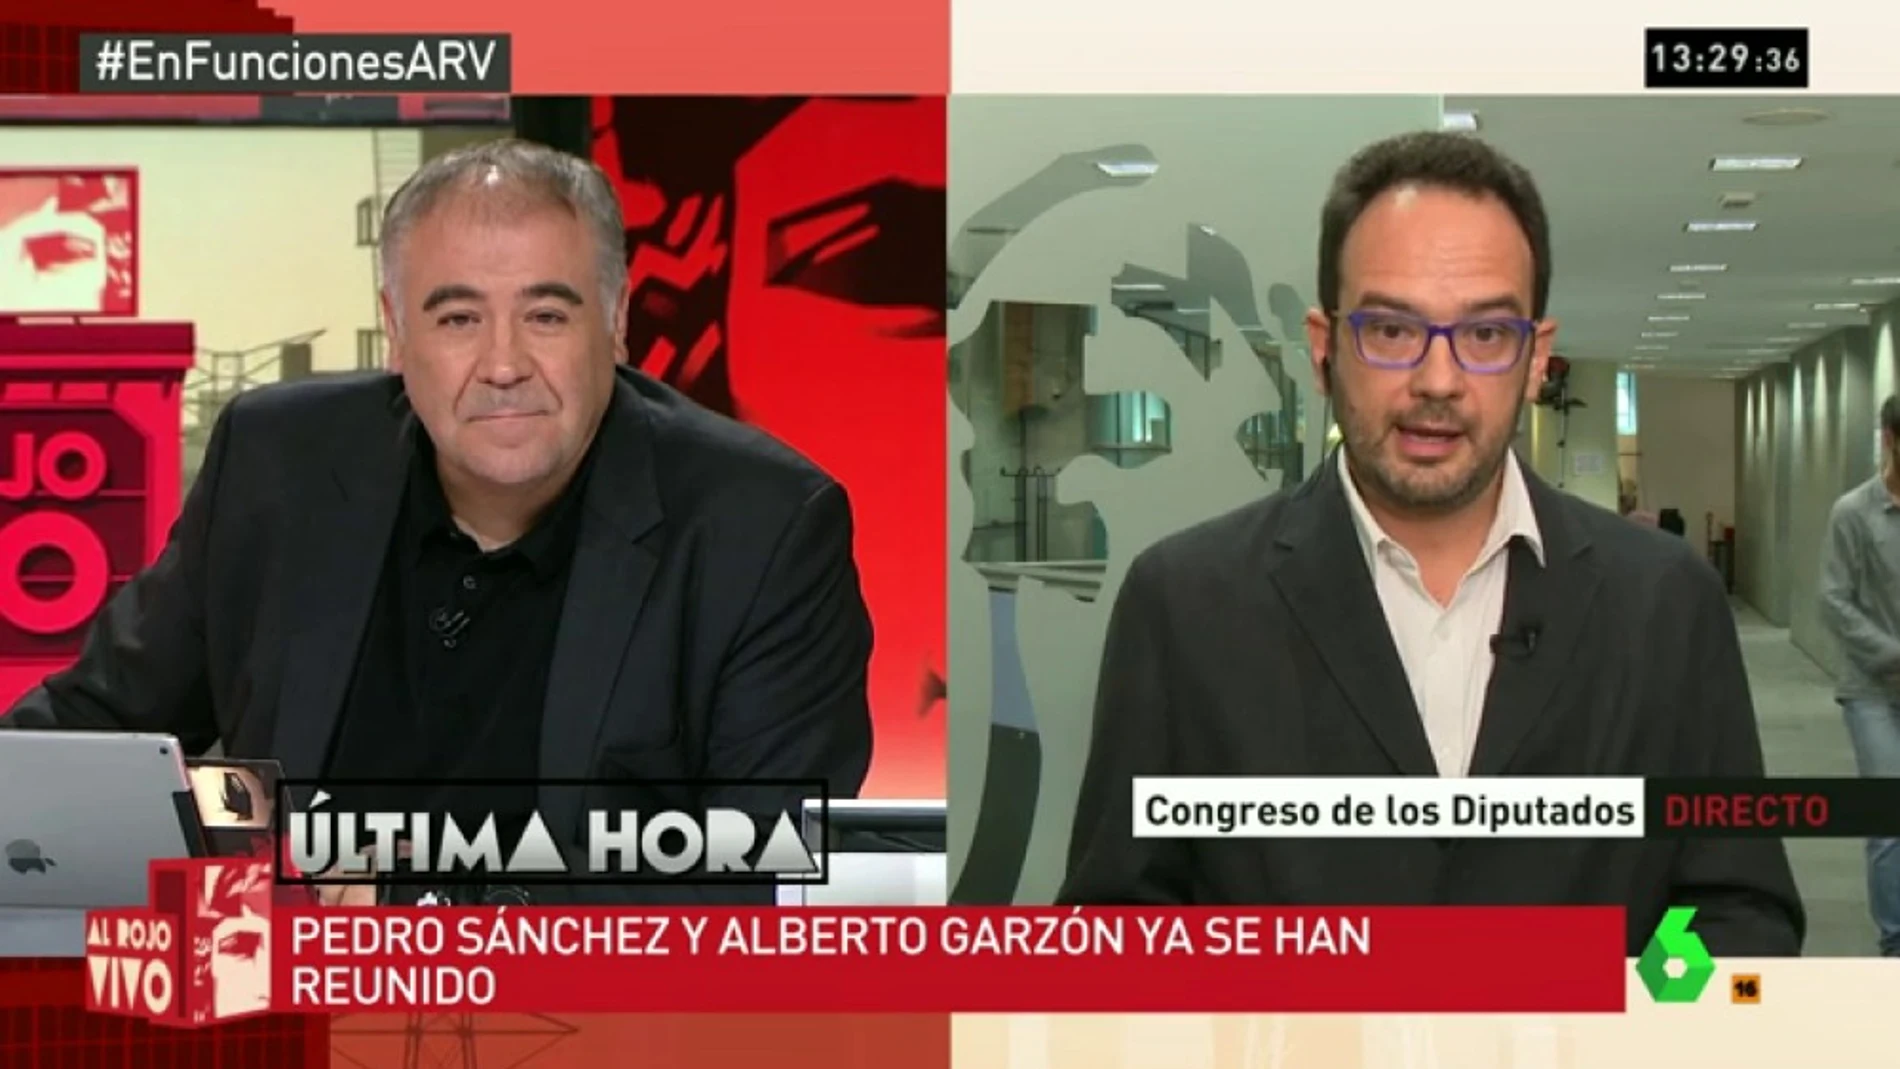 Antonio Hernando: "¿Qué credibilidad tiene Rajoy después de pillarle en tantas mentiras? Seguiremos en el 'no"